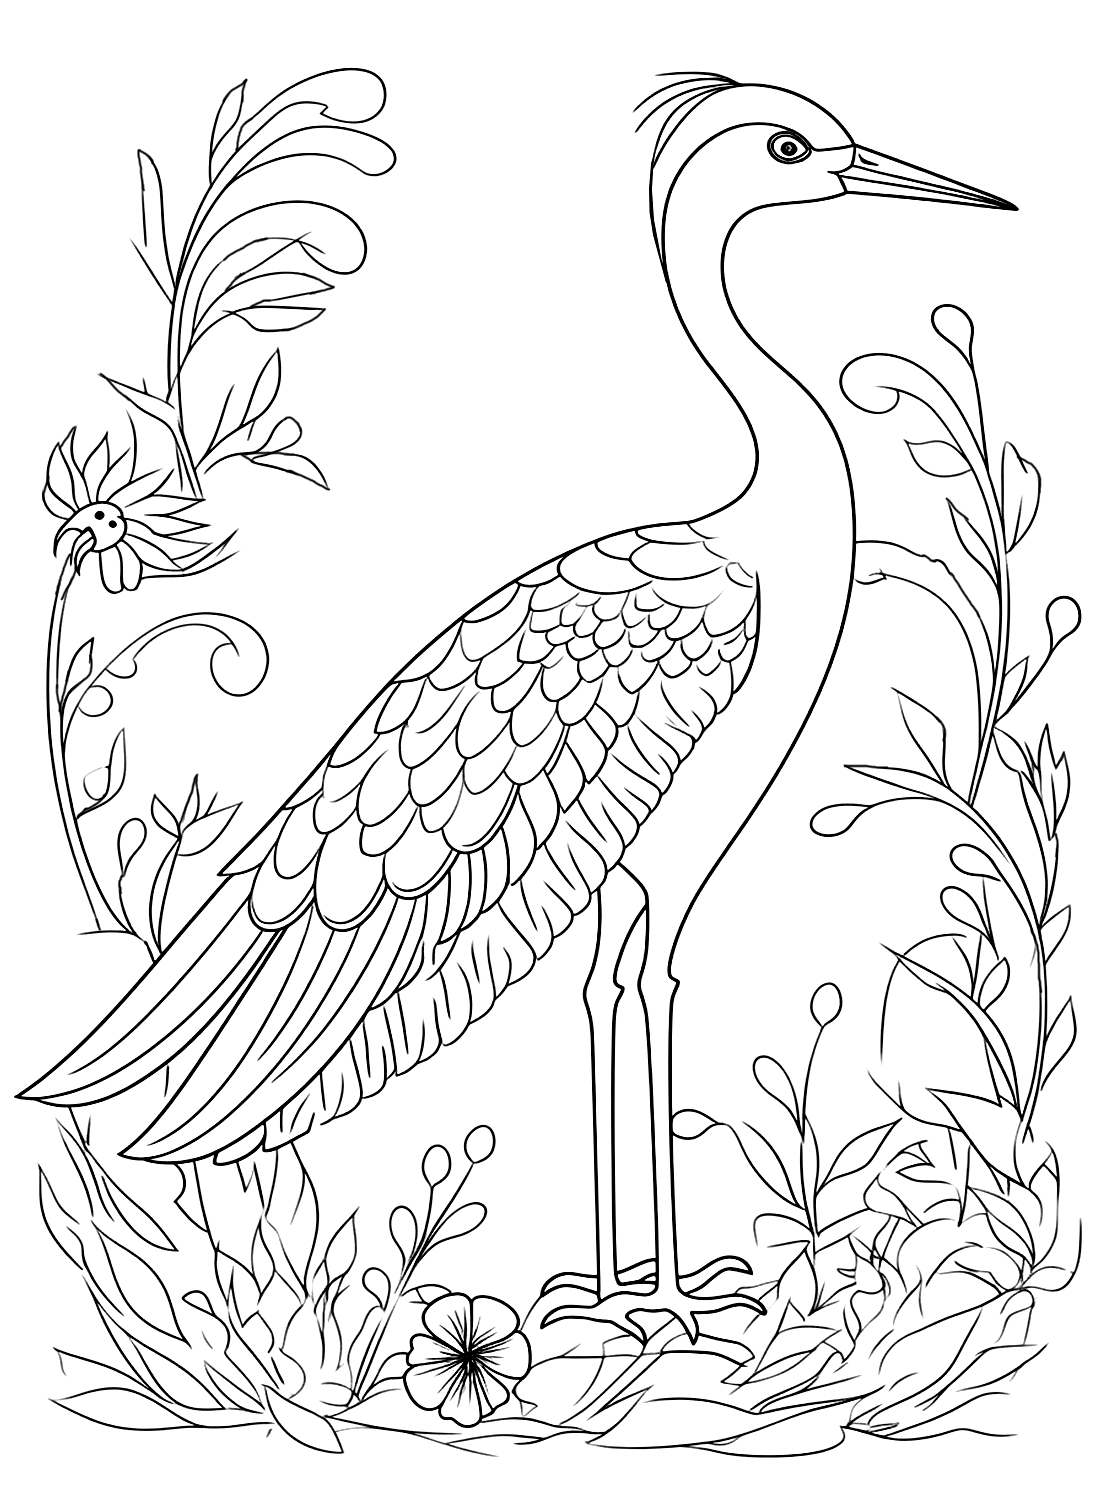 Аист с разноцветными перьями от Stork